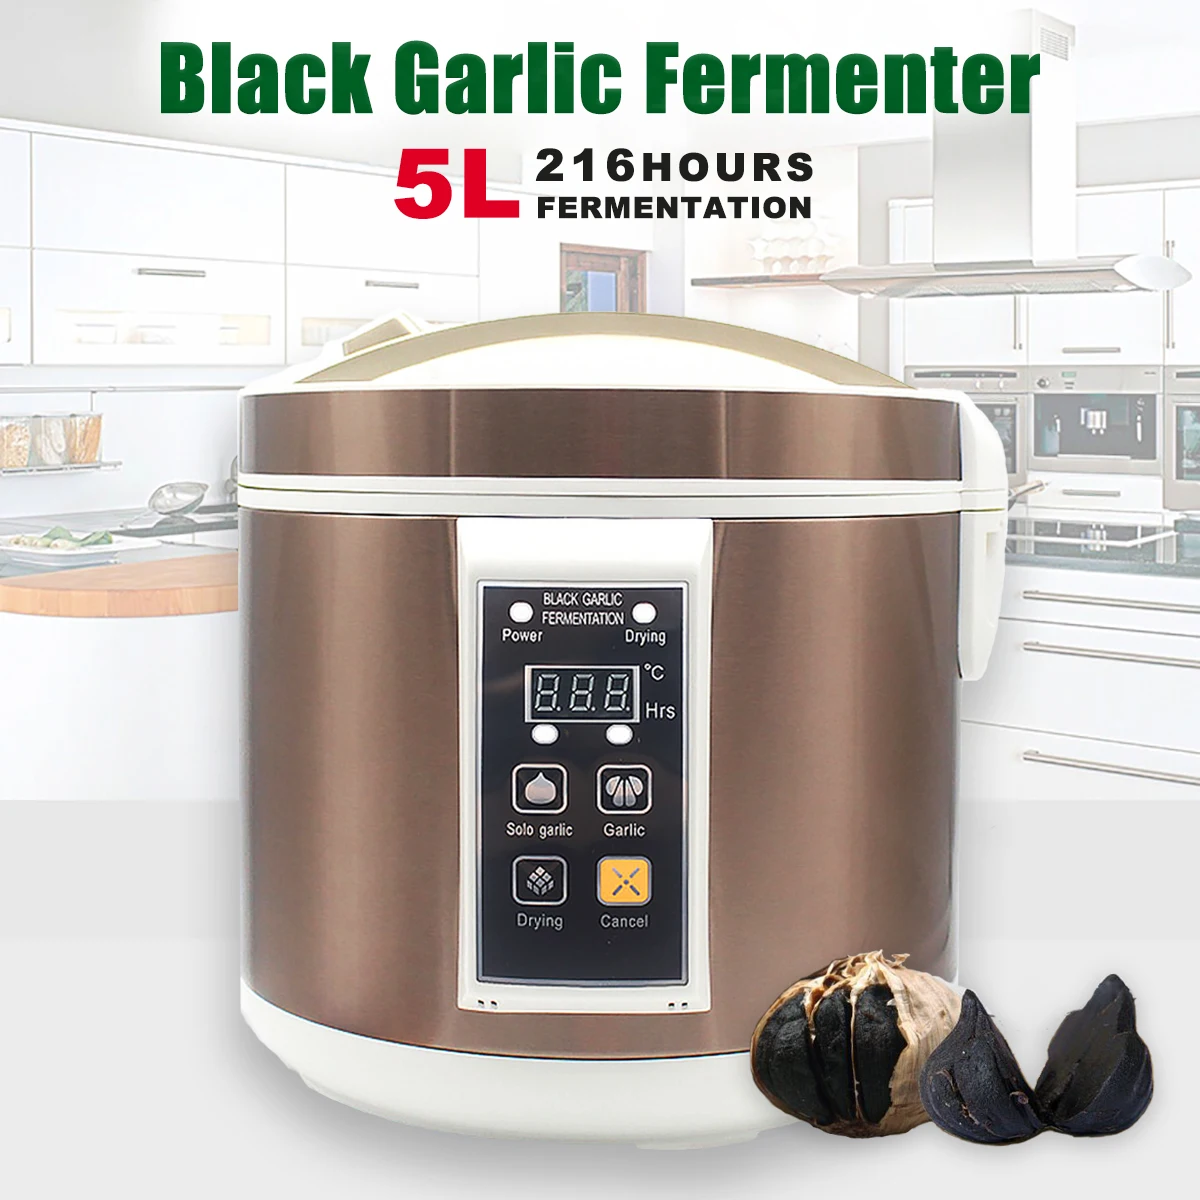 90 Вт 5л автоматический ферментер для чеснока коробка ферментации черный чеснок